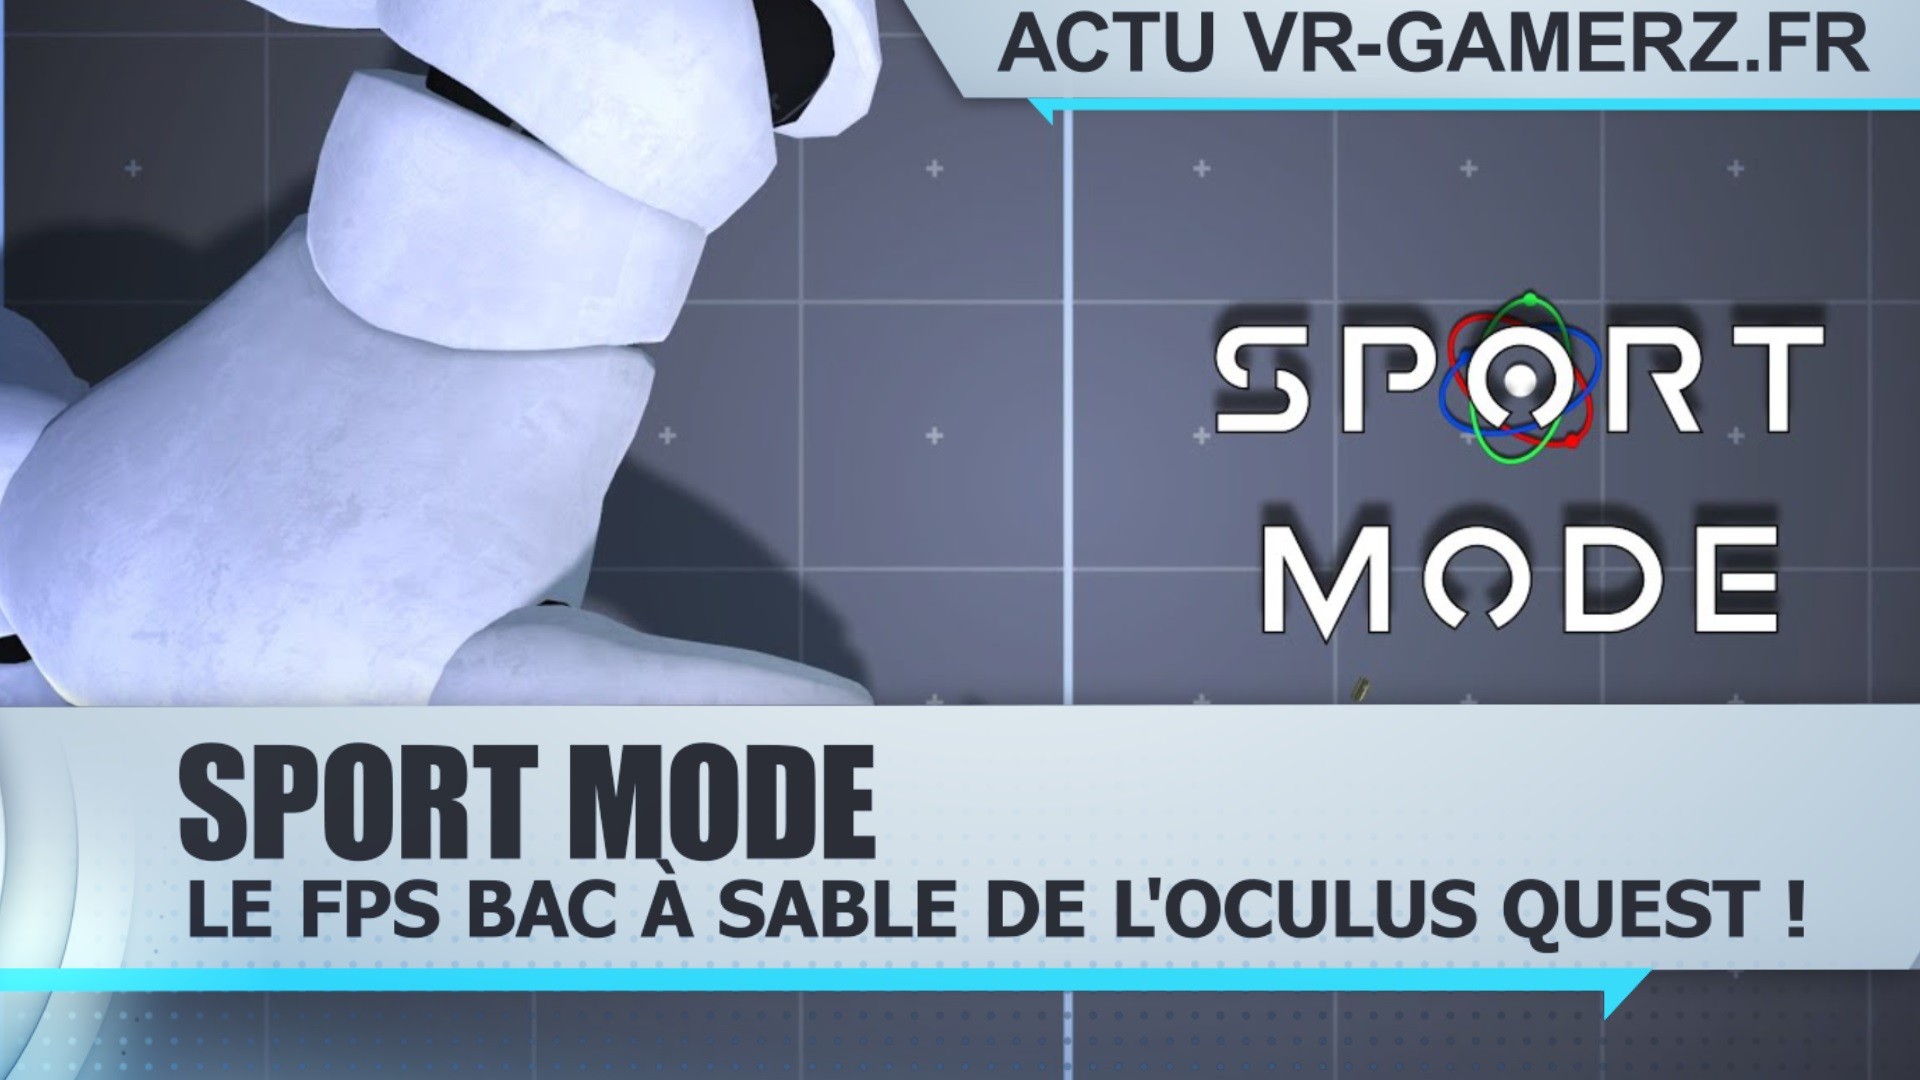 Sport Mode : Le FPS bac à sable de l’Oculus quest !